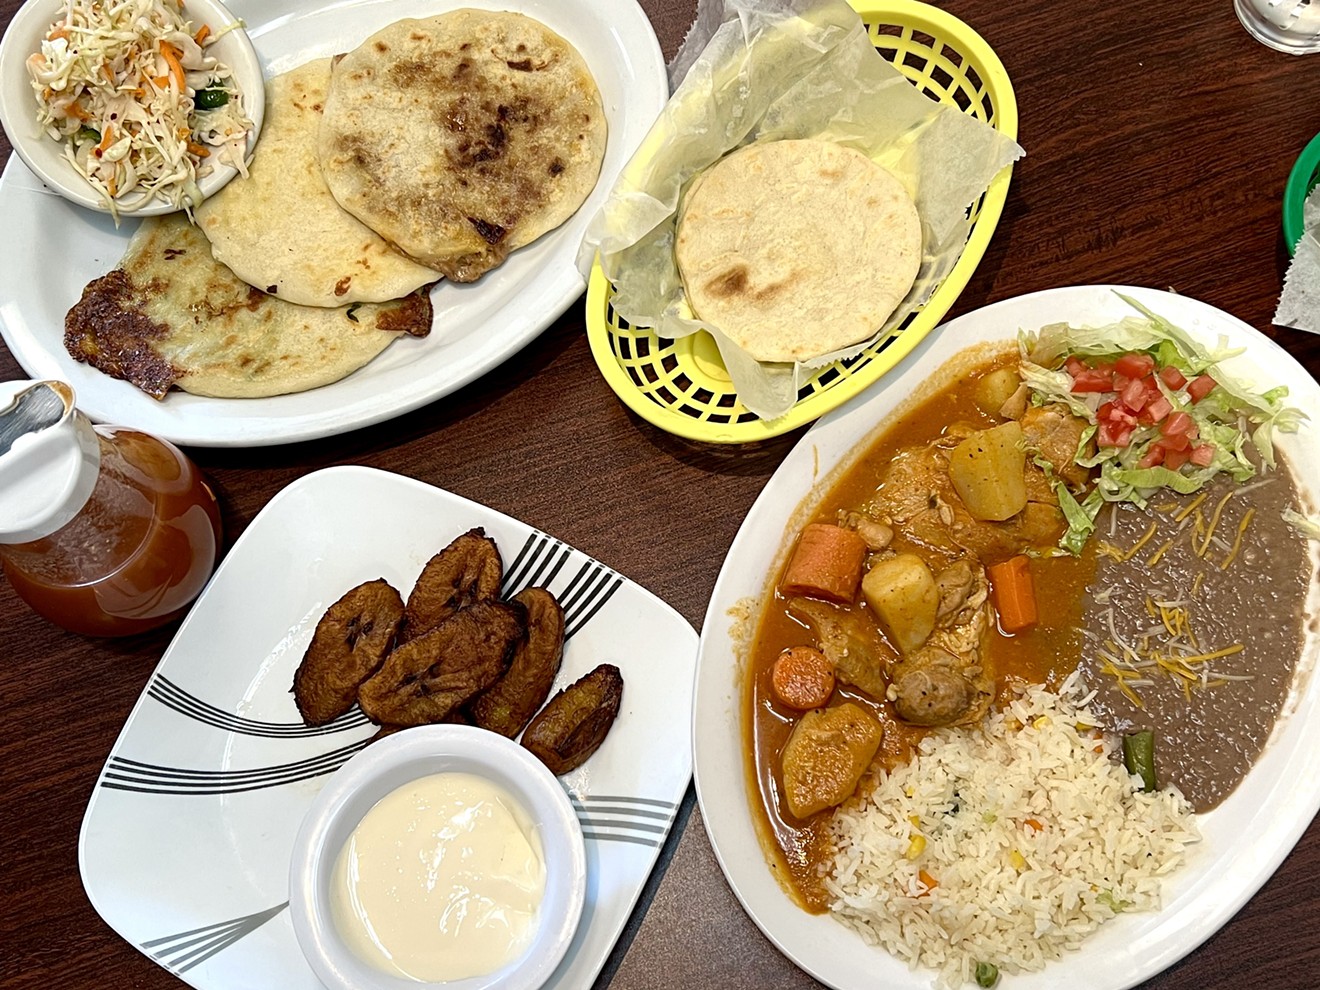 El Lucero's menu includes pupusas, plantains and pollo guisado.